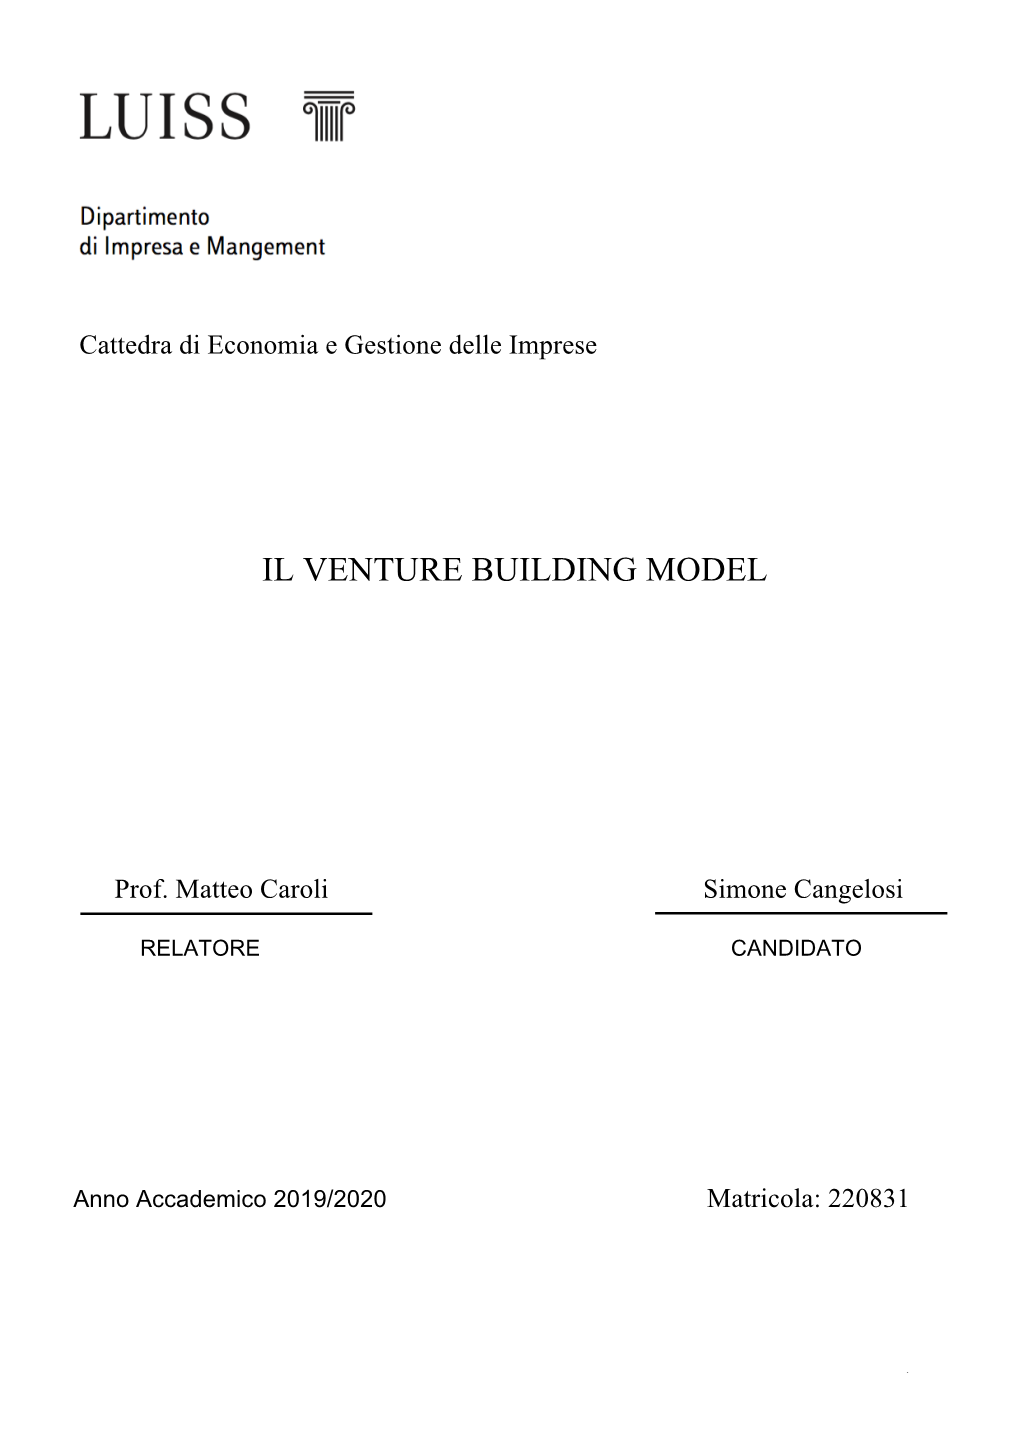 Il Venture Building Model